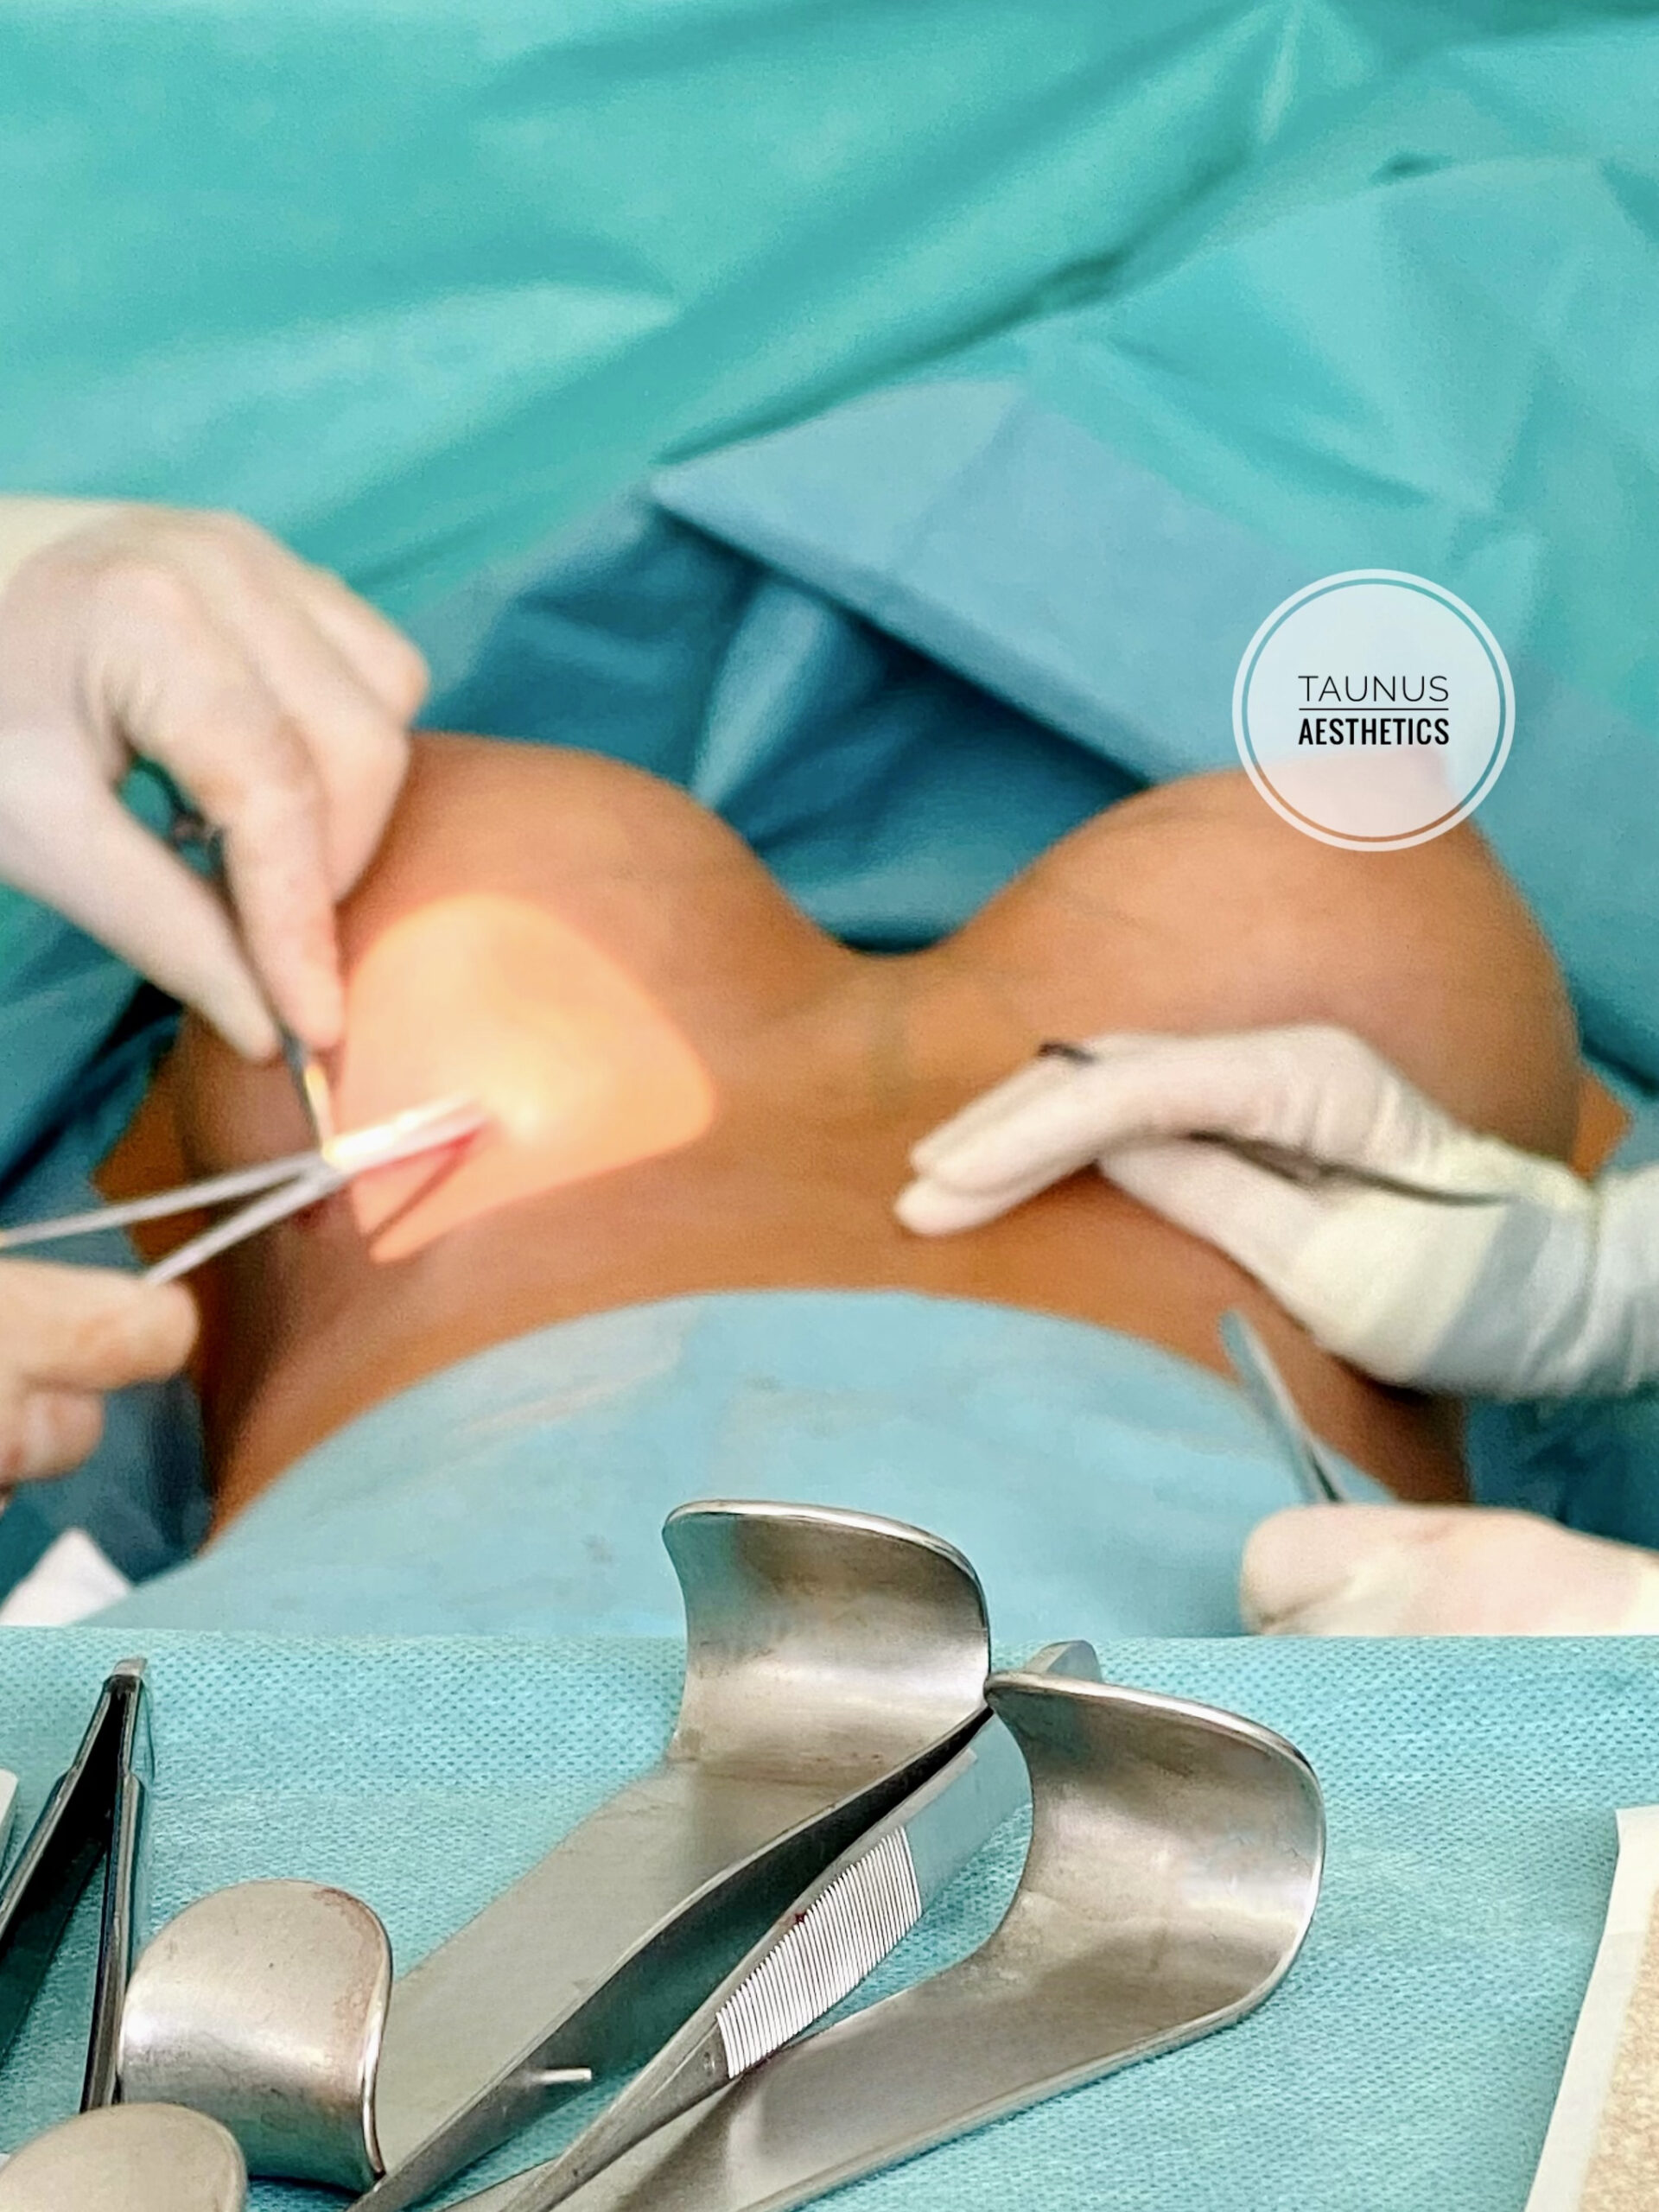 Zu sehen ist ein Operationstisch während einer Brustvergrößerung mit großen Implantaten